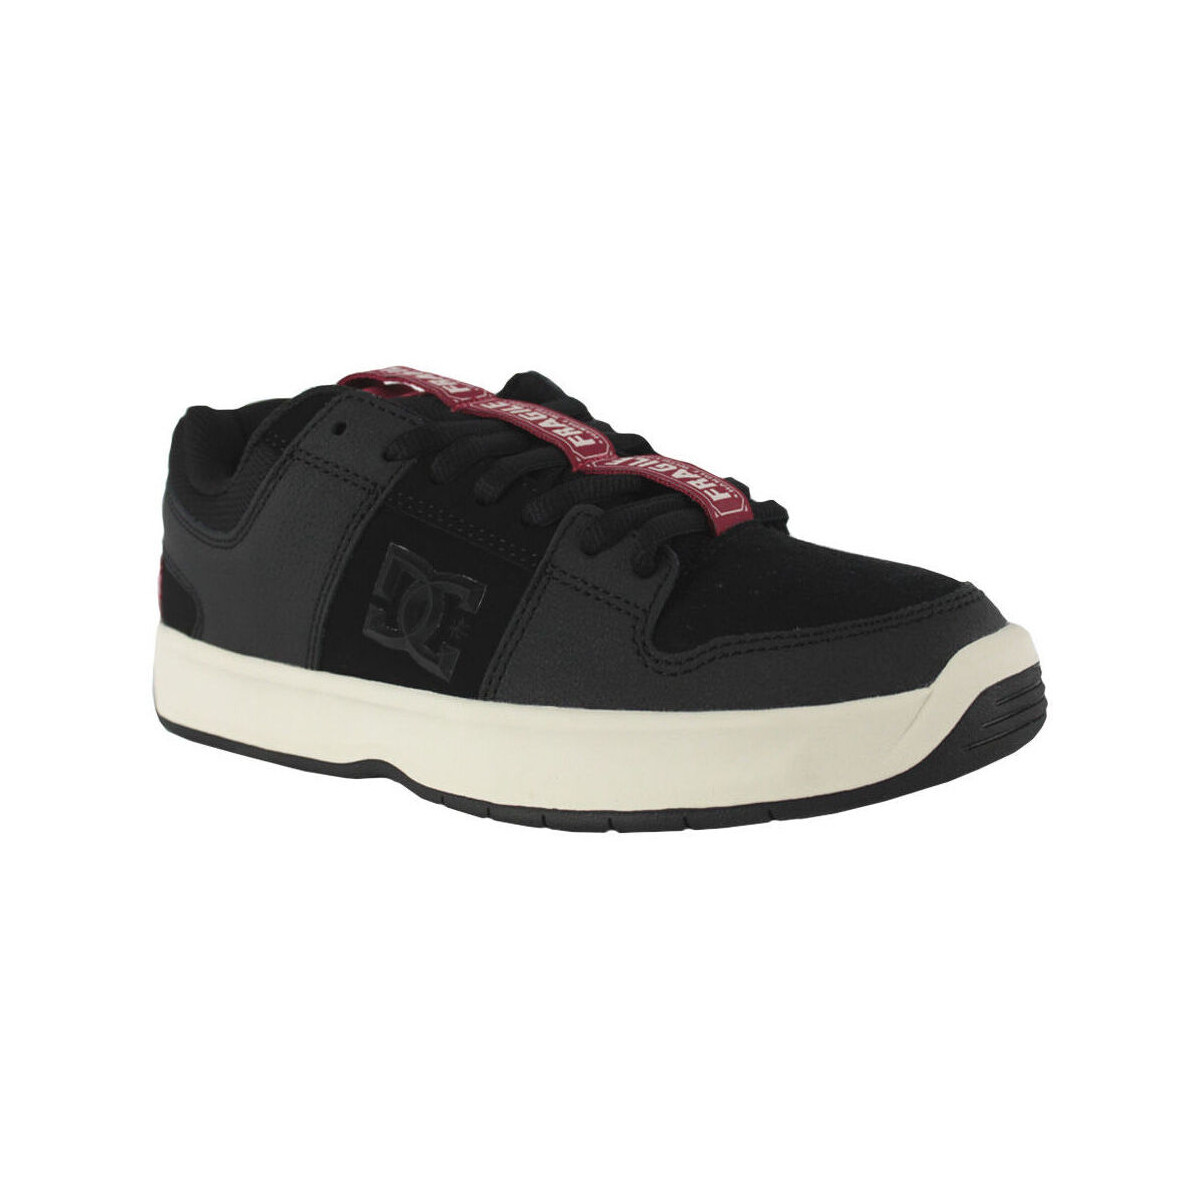 Sneakers DC Shoes Aw lynx zero s ADYS100718 BLACK/BLACK/WHITE (XKKW)